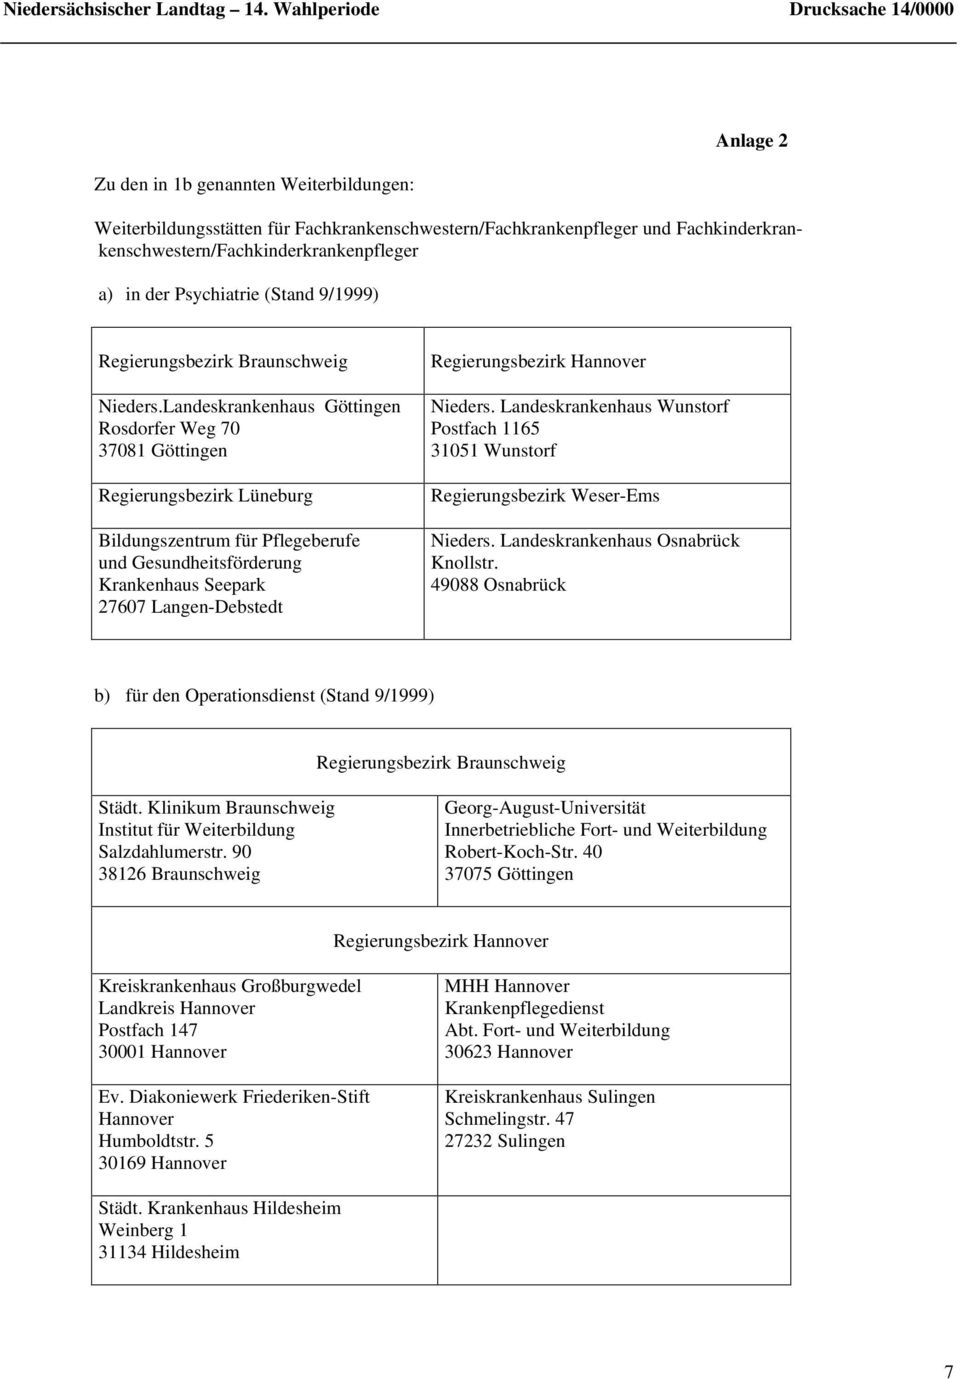 Fachkinderkrankenschwestern/Fachkinderkrankenpfleger a) in der Psychiatrie (Stand 9/1999) Regierungsbezirk Braunschweig Nieders.